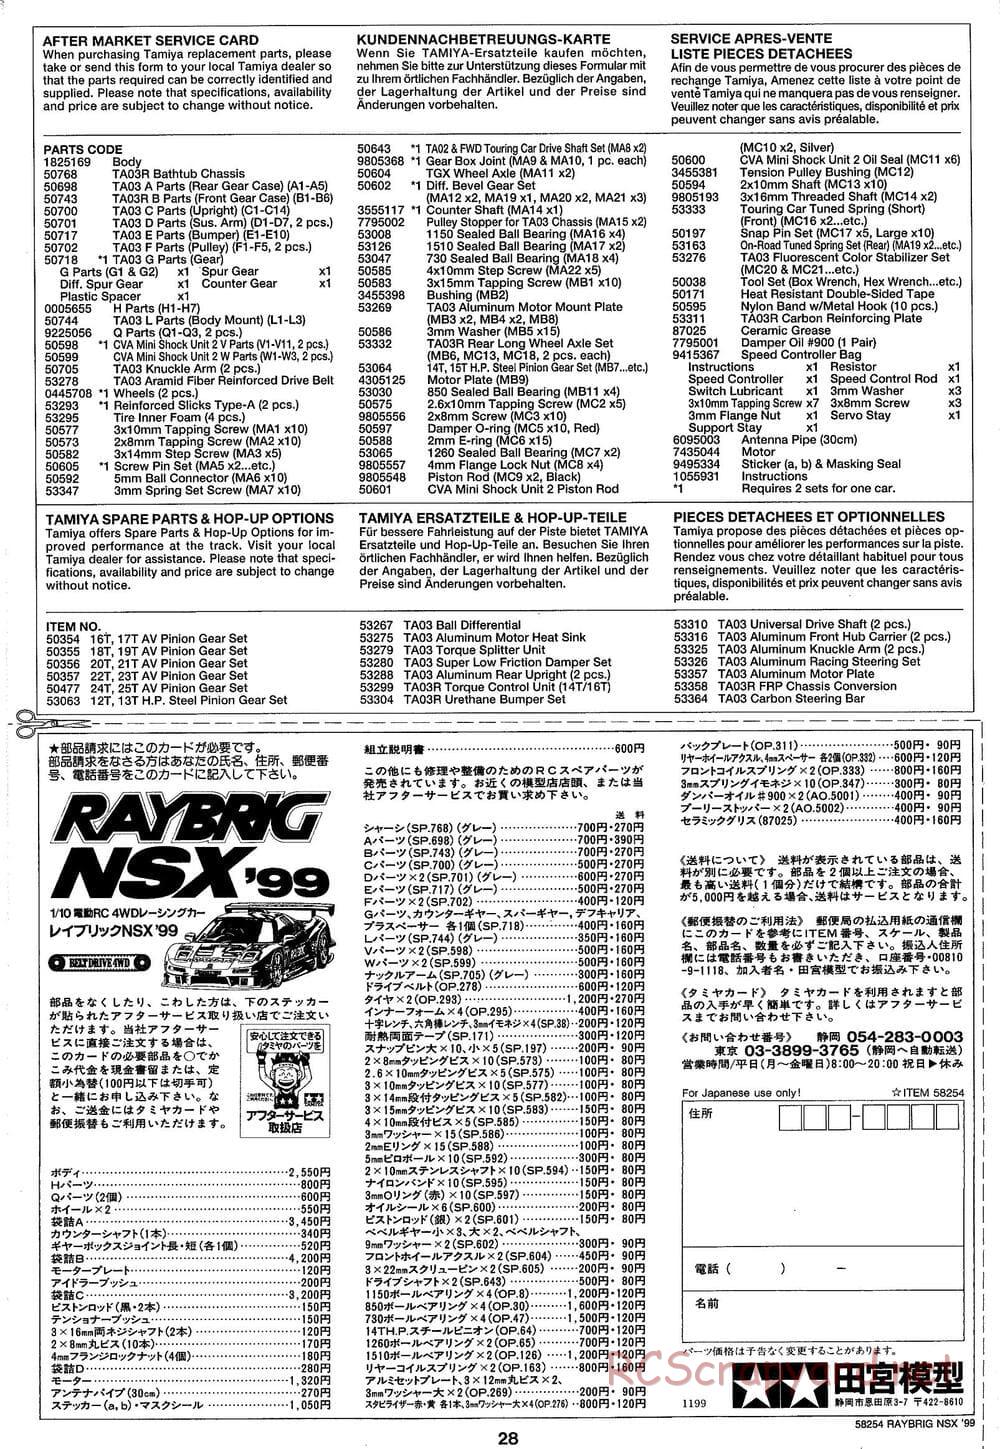 Tamiya - Raybrig NSX 99 - TA-03R Chassis - Manual - Page 28